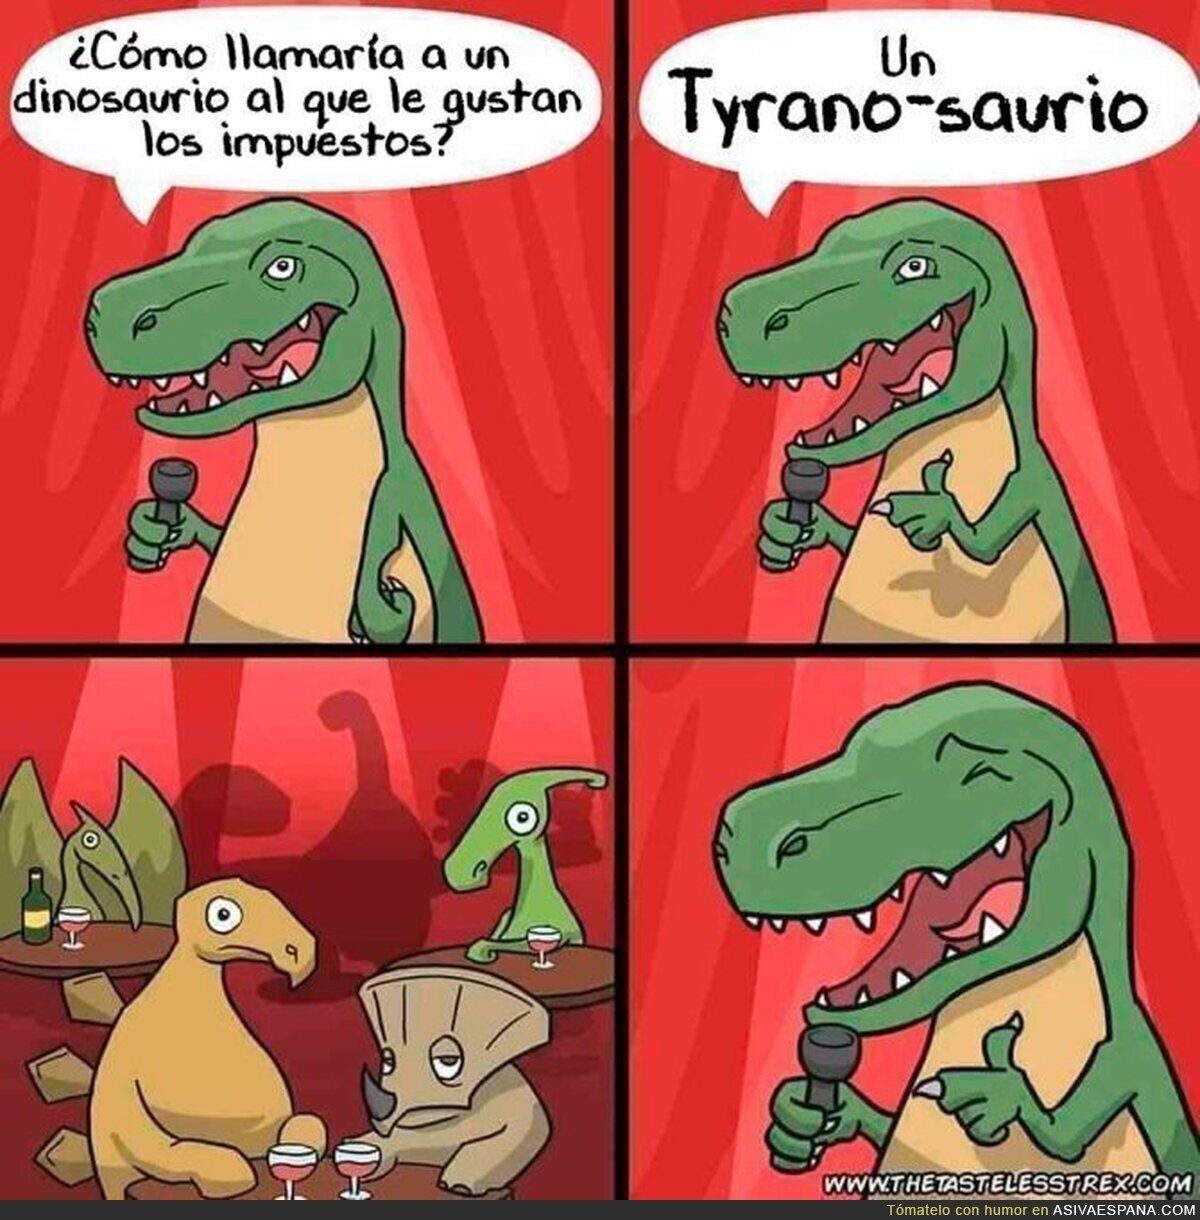 El dinosaurio favorito de Montoro